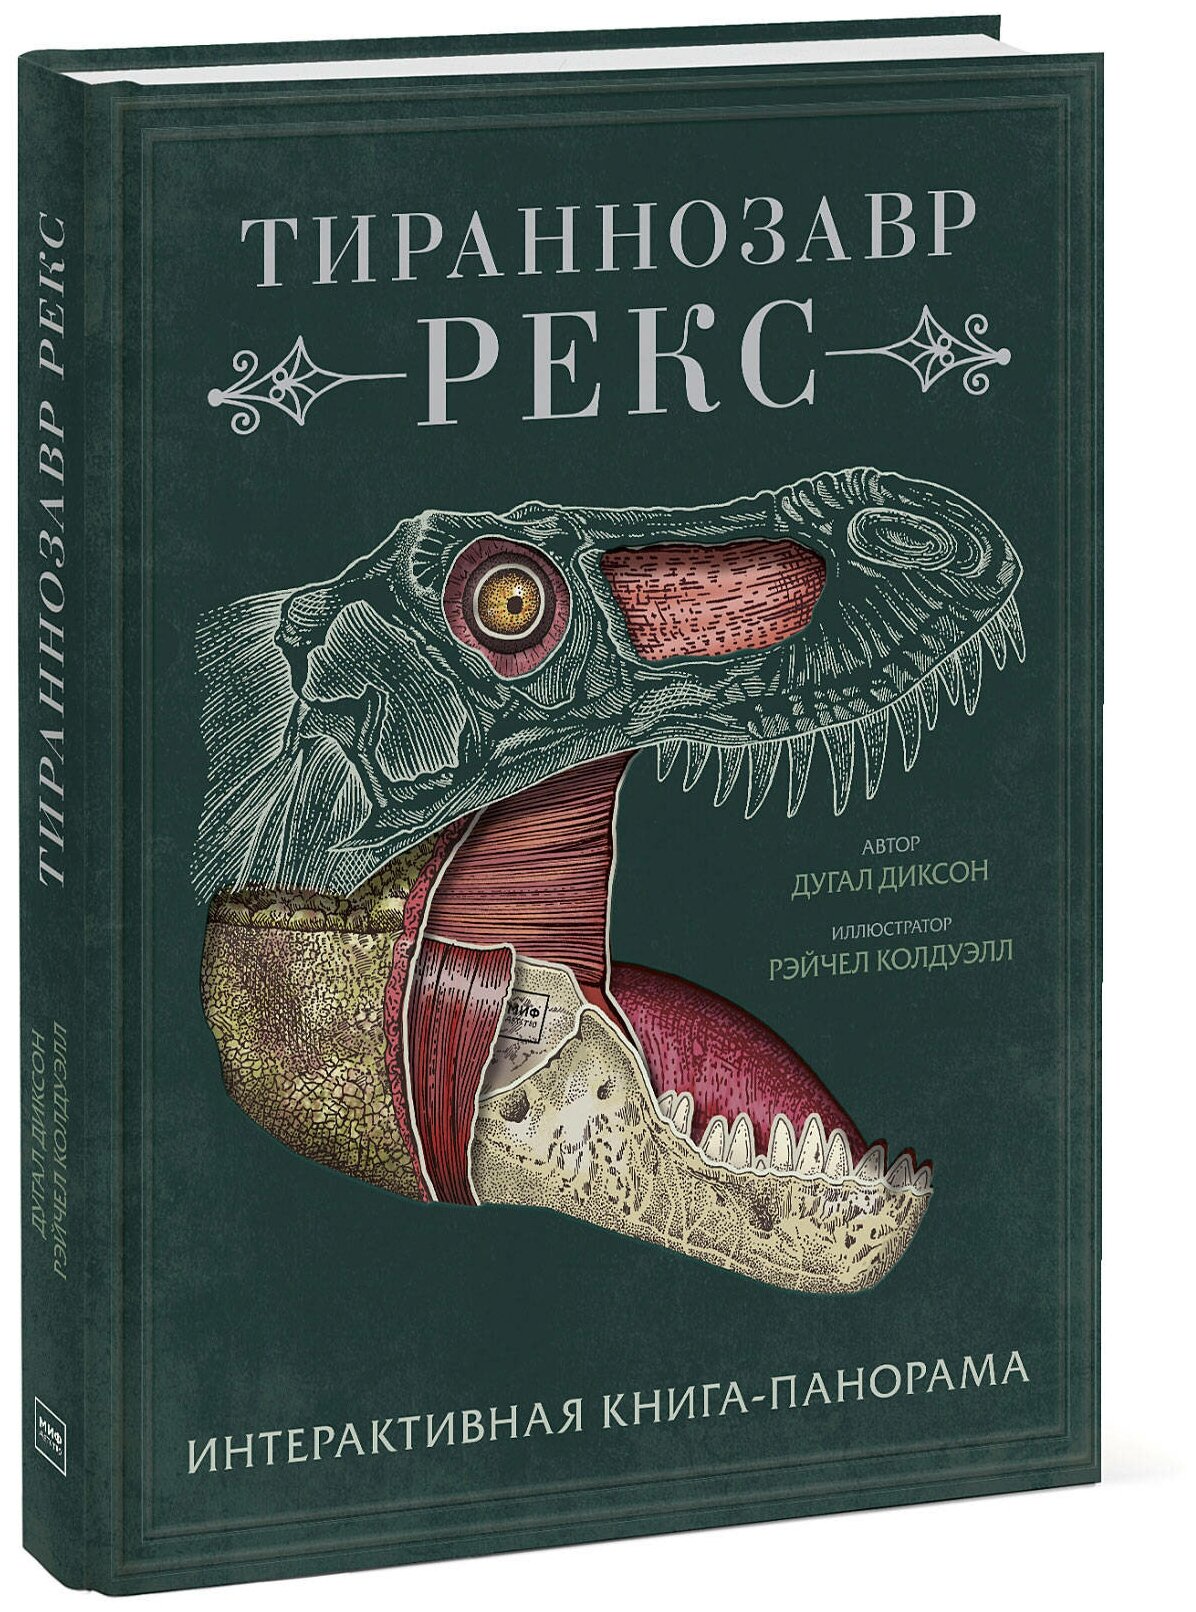 Дугал Диксон. Тираннозавр рекс. Интерактивная книга-панорама